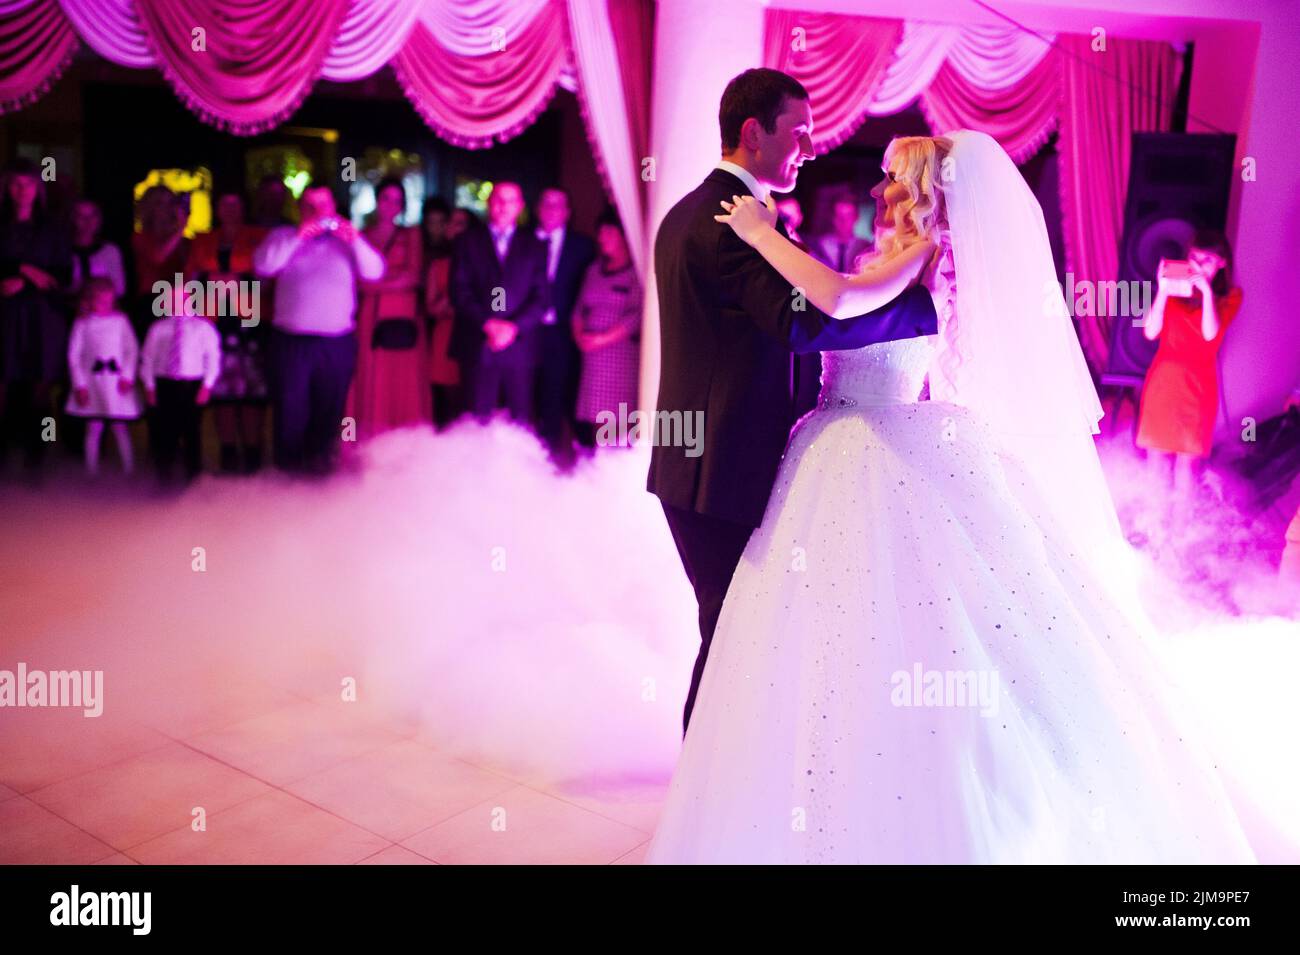 Première danse de mariage étonnant de jeunes mariés en faible lumière rose et la fumée intense Banque D'Images